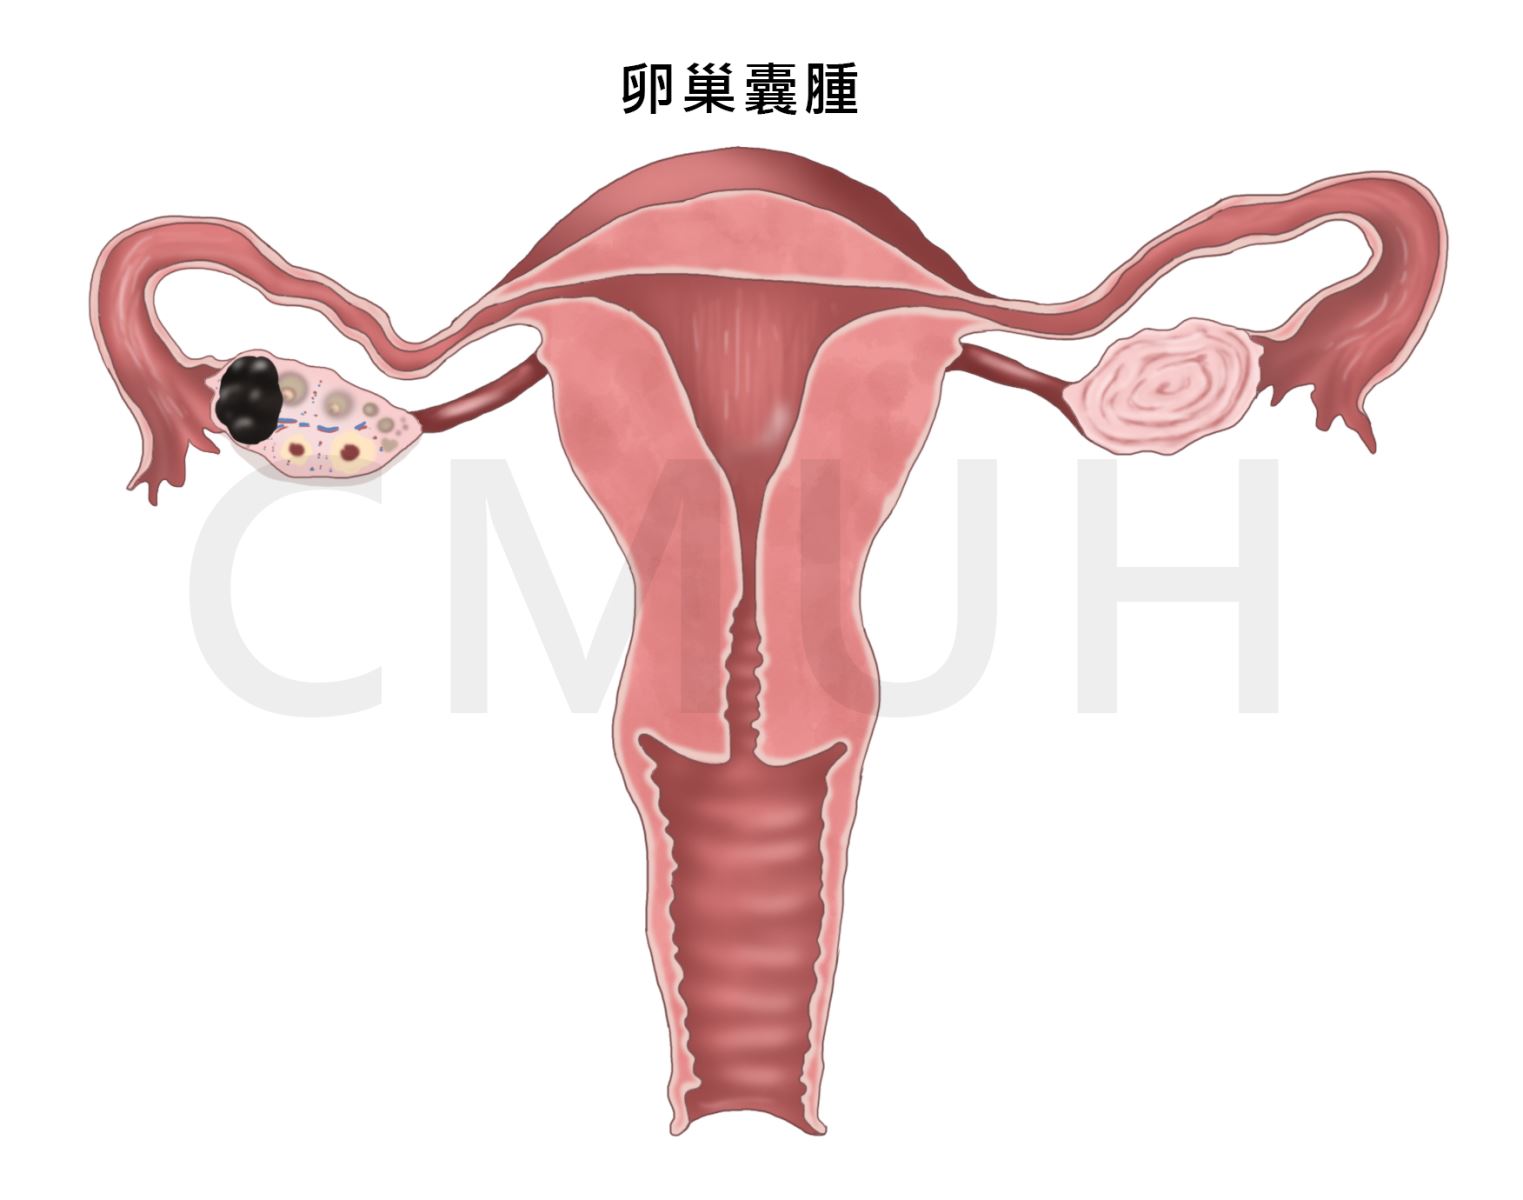 卵巢囊腫是充滿液體的囊袋在卵巢內或在卵巢的表面。